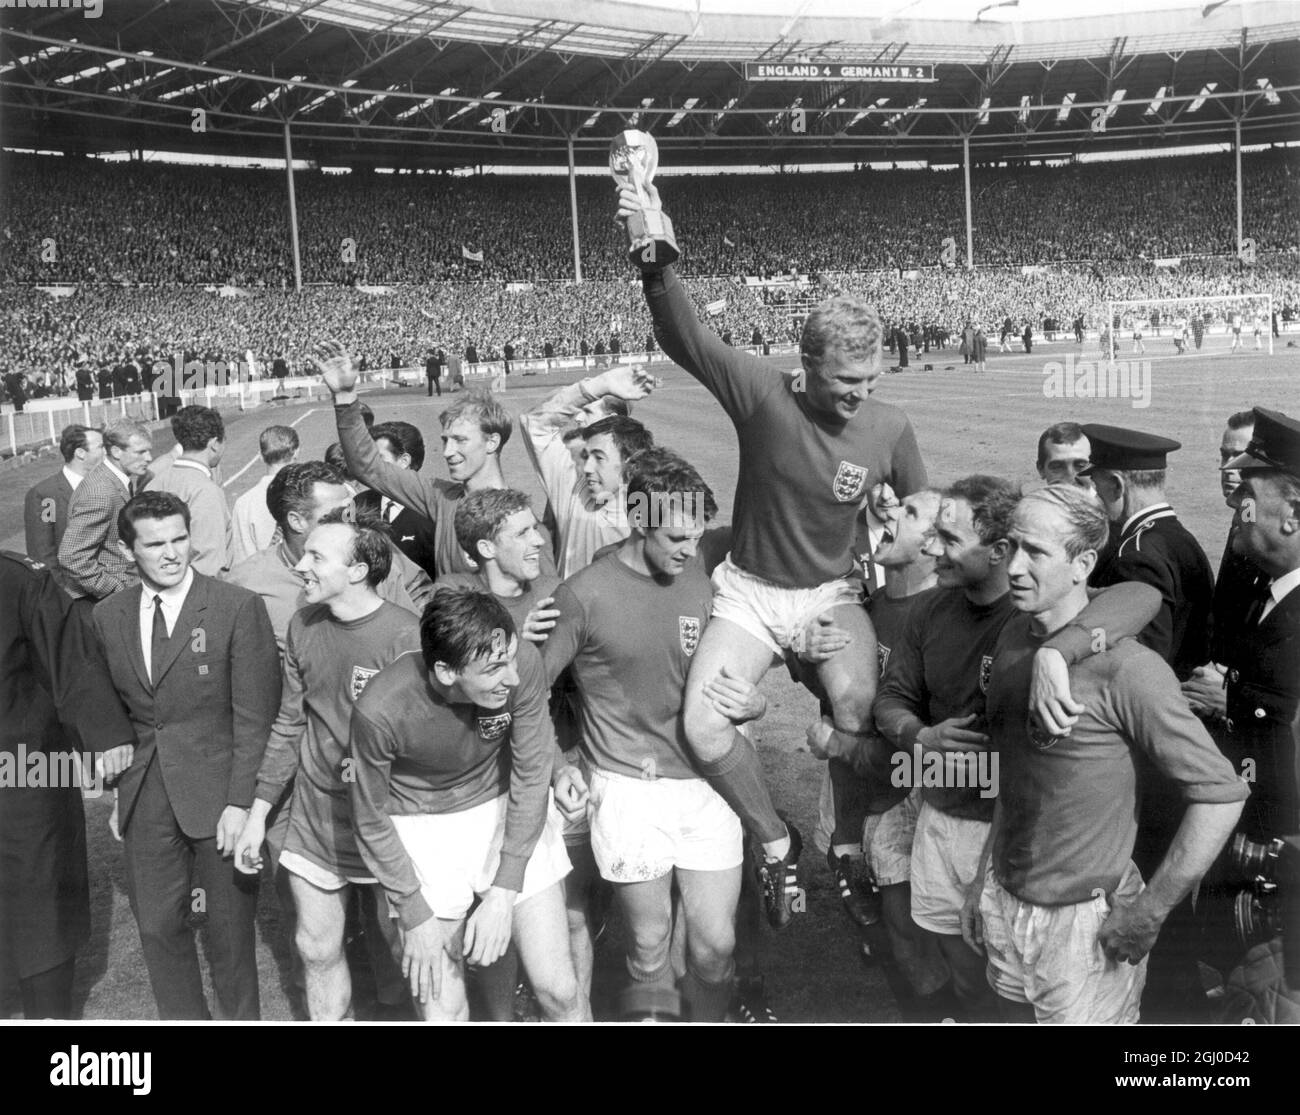 WM 1966 England gegen Westdeutschland Bobby Moore hält die Trophäe Jules  Rimet entgegen, nachdem England in Wembley 4-2 gegen Westdeutschland  besiegt hatte, um die Weltmeisterschaft zu gewinnen. Juli 1966  Stockfotografie - Alamy